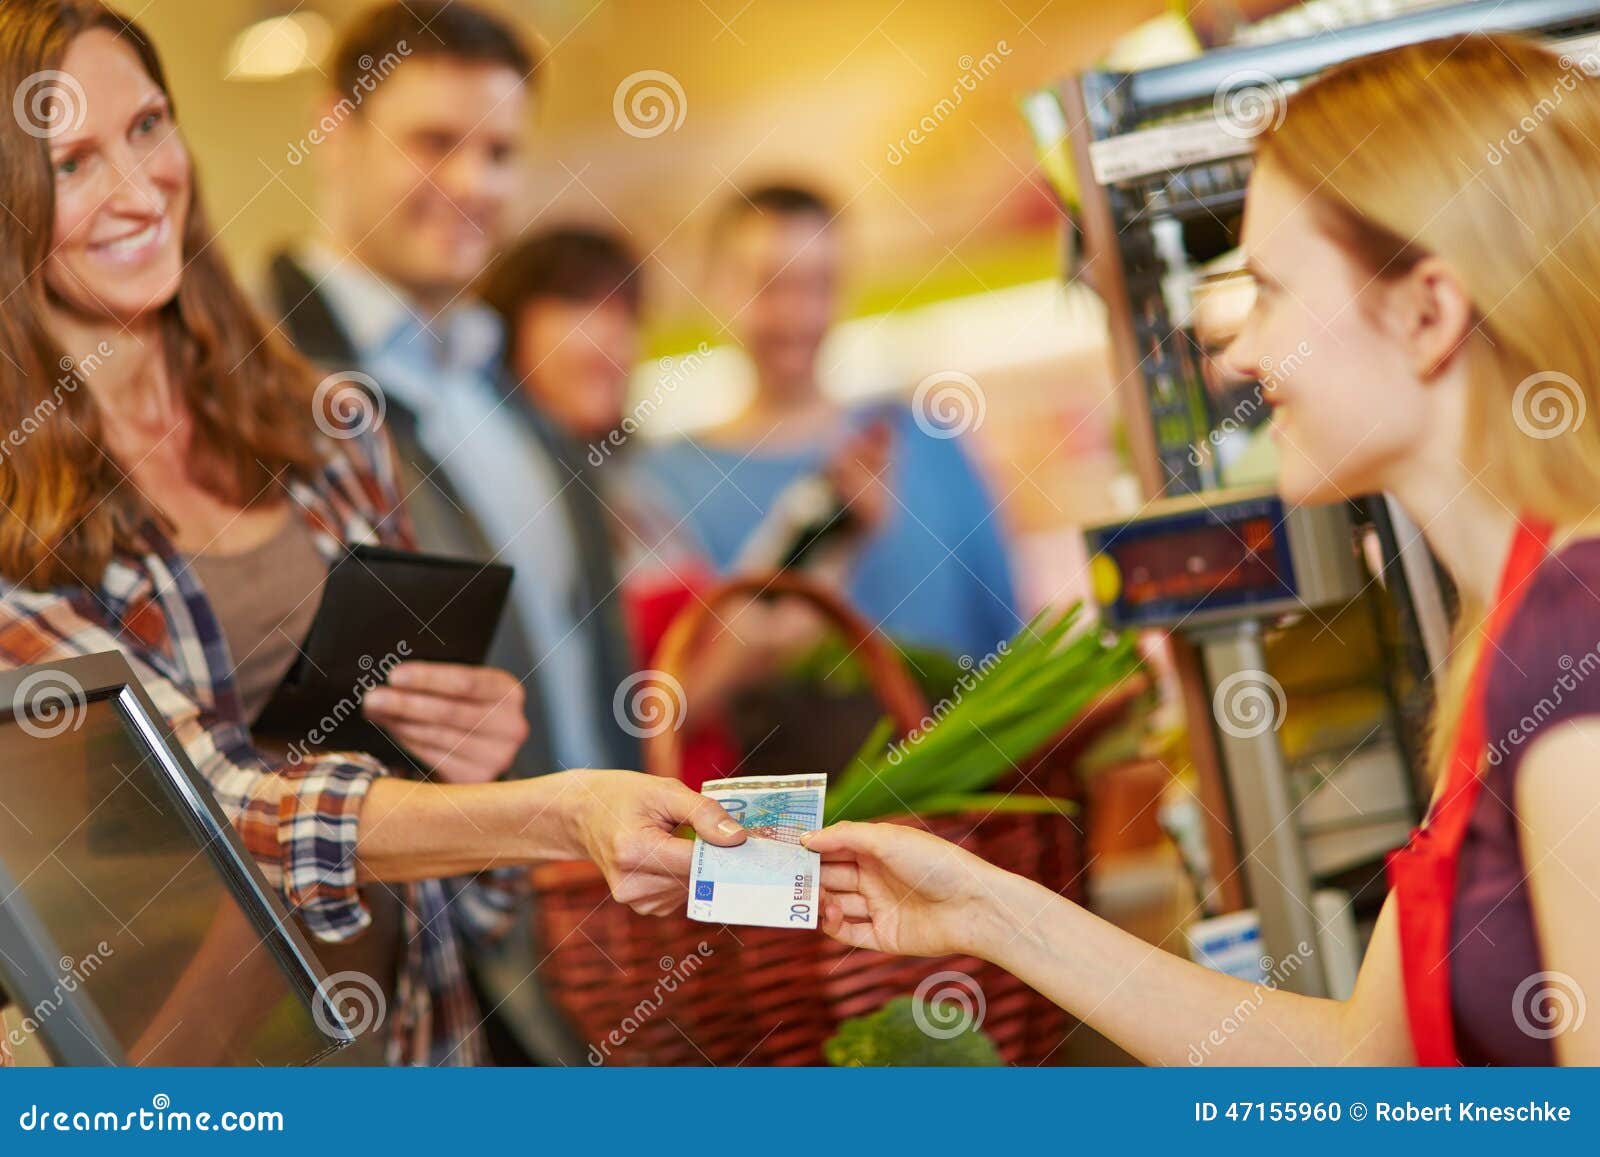 Mum go to the shops. Оплата на кассе. Расплачивается в магазине. Наличные на кассе. Человек с деньгами на кассе.